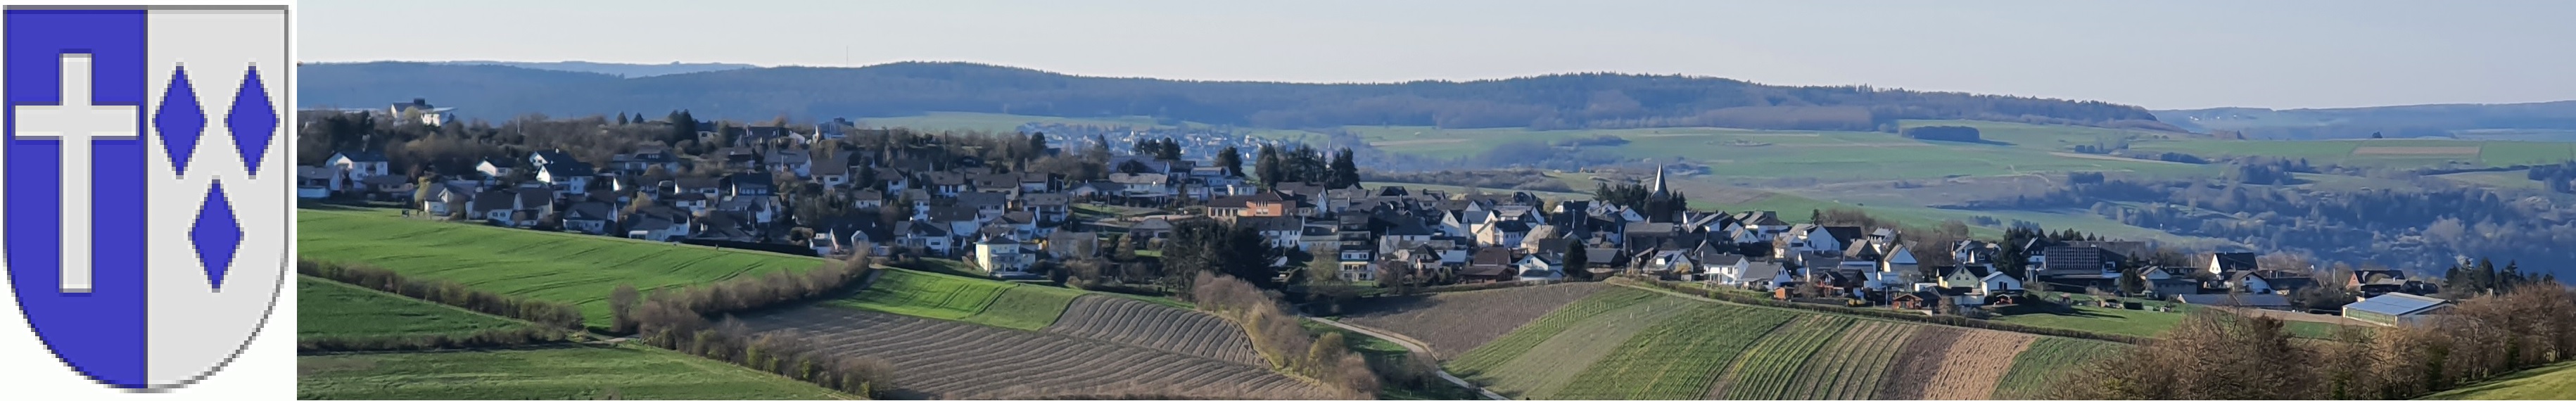 Blick auf Dellhofen aus südlicher Richtung, oberhalb von Oberwesel gelegen